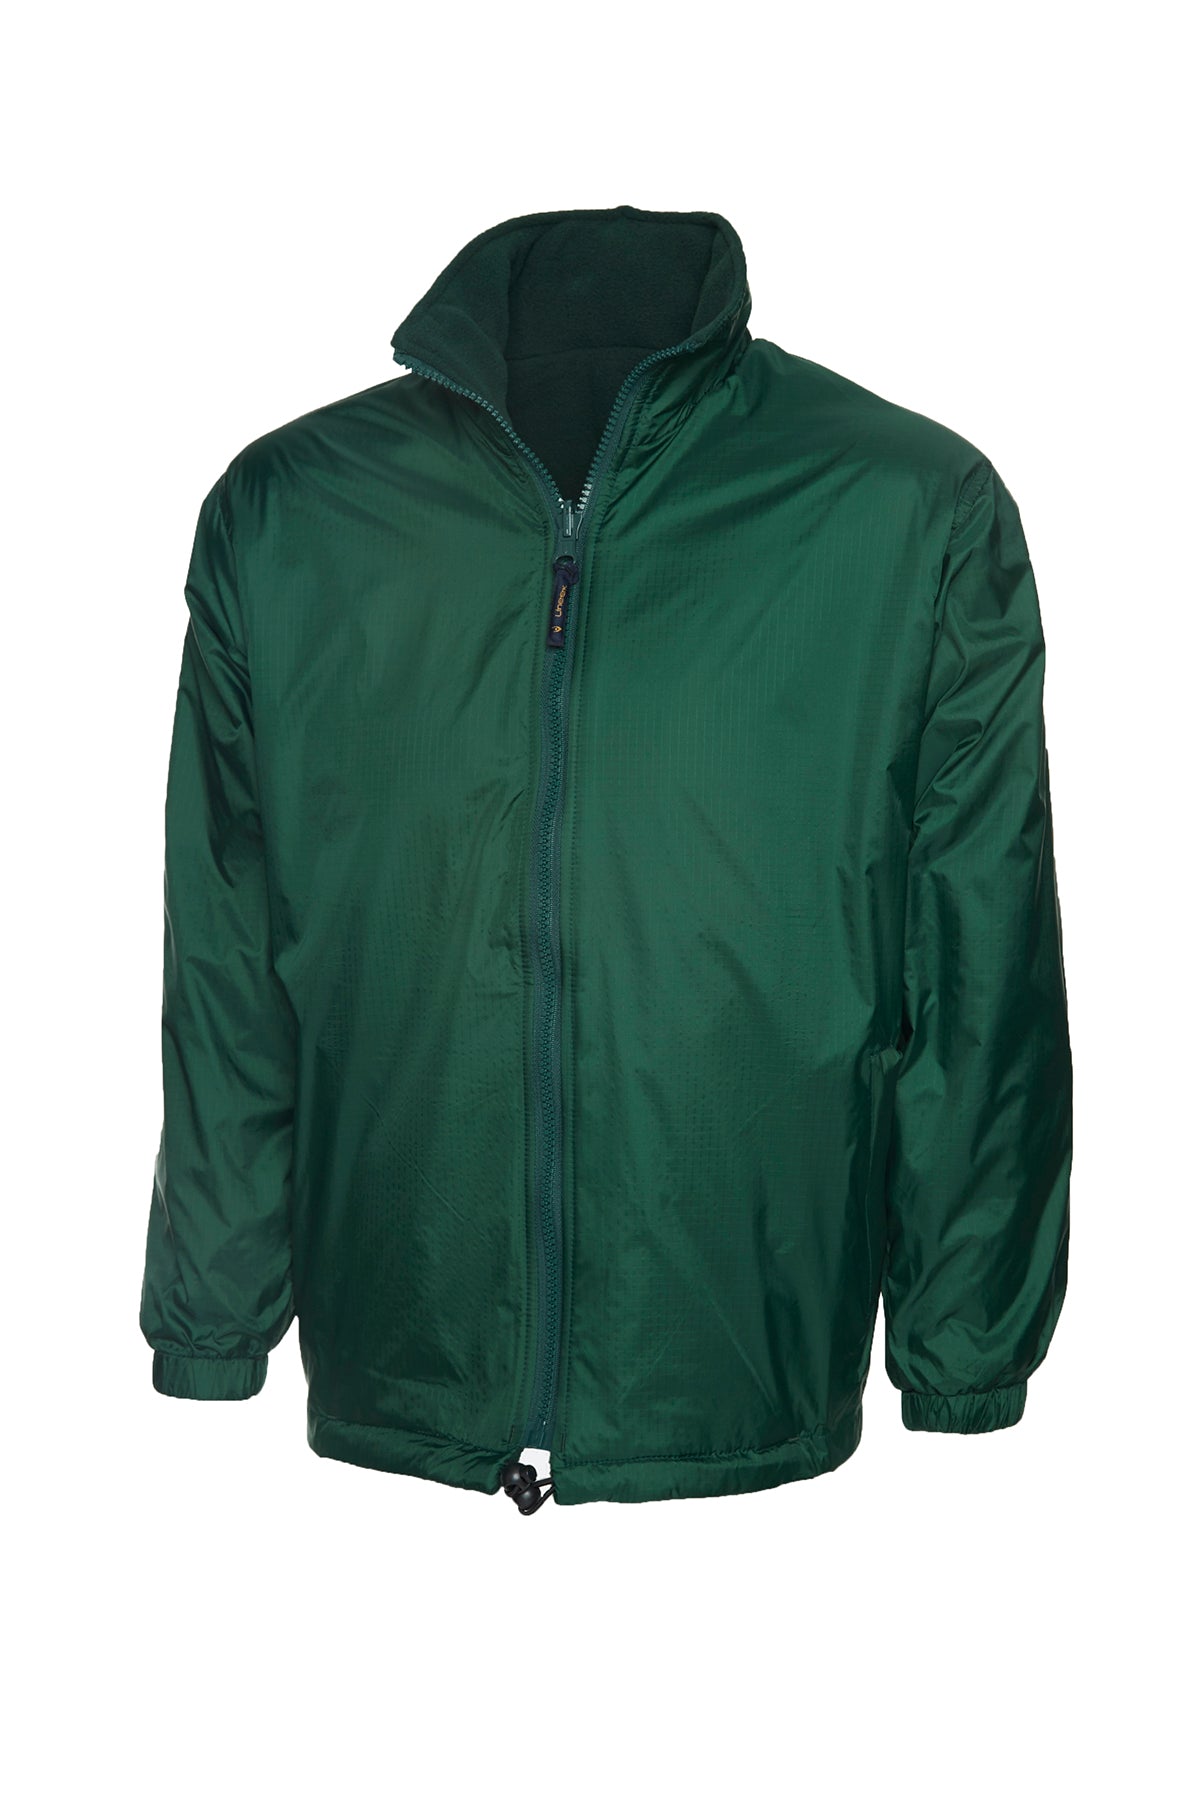 Uneek Premium Reversible Fleece Jacket UC605 - Bottle Green